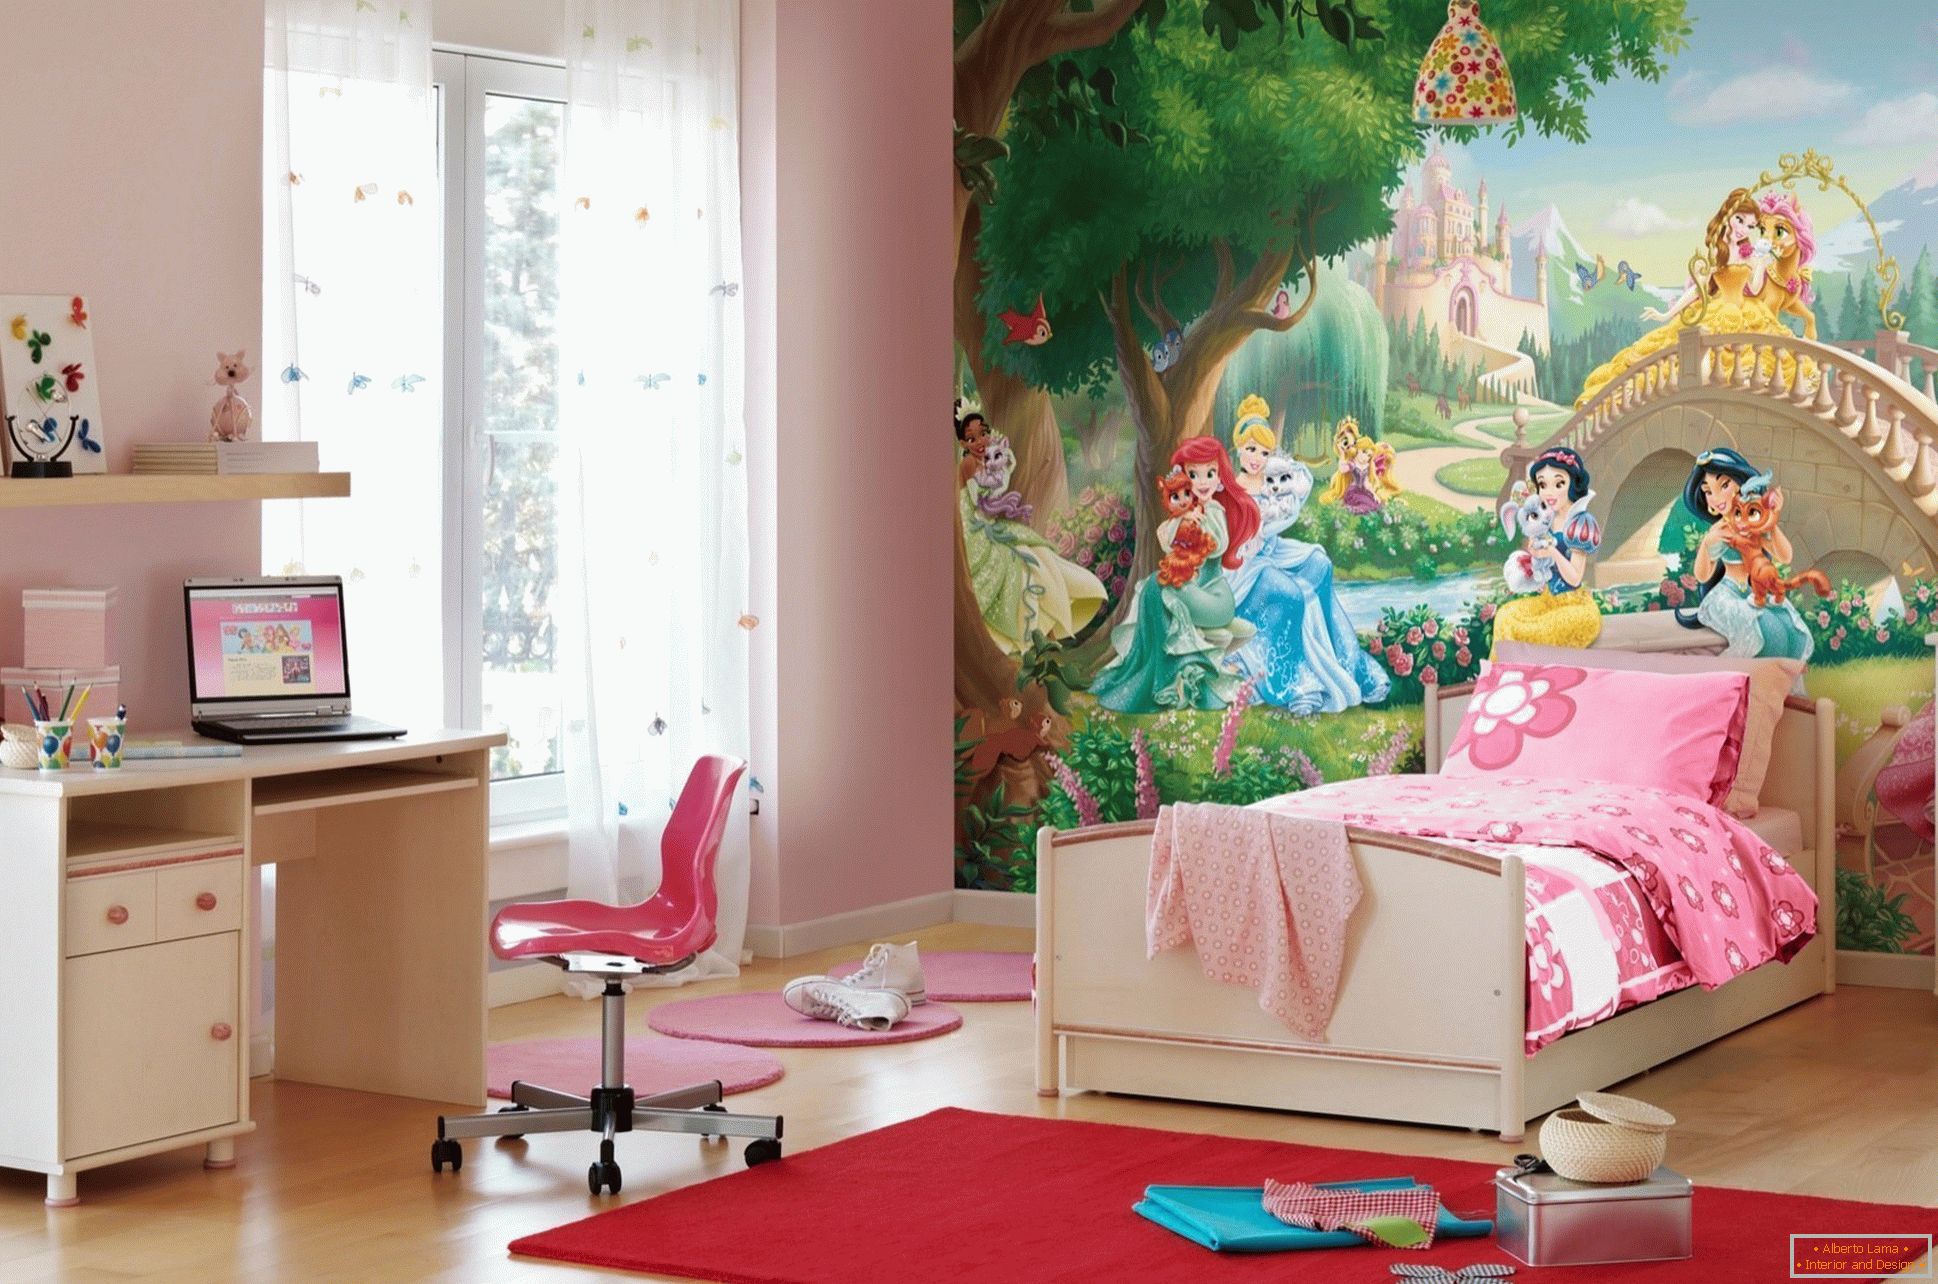 Bedroom for a little girl